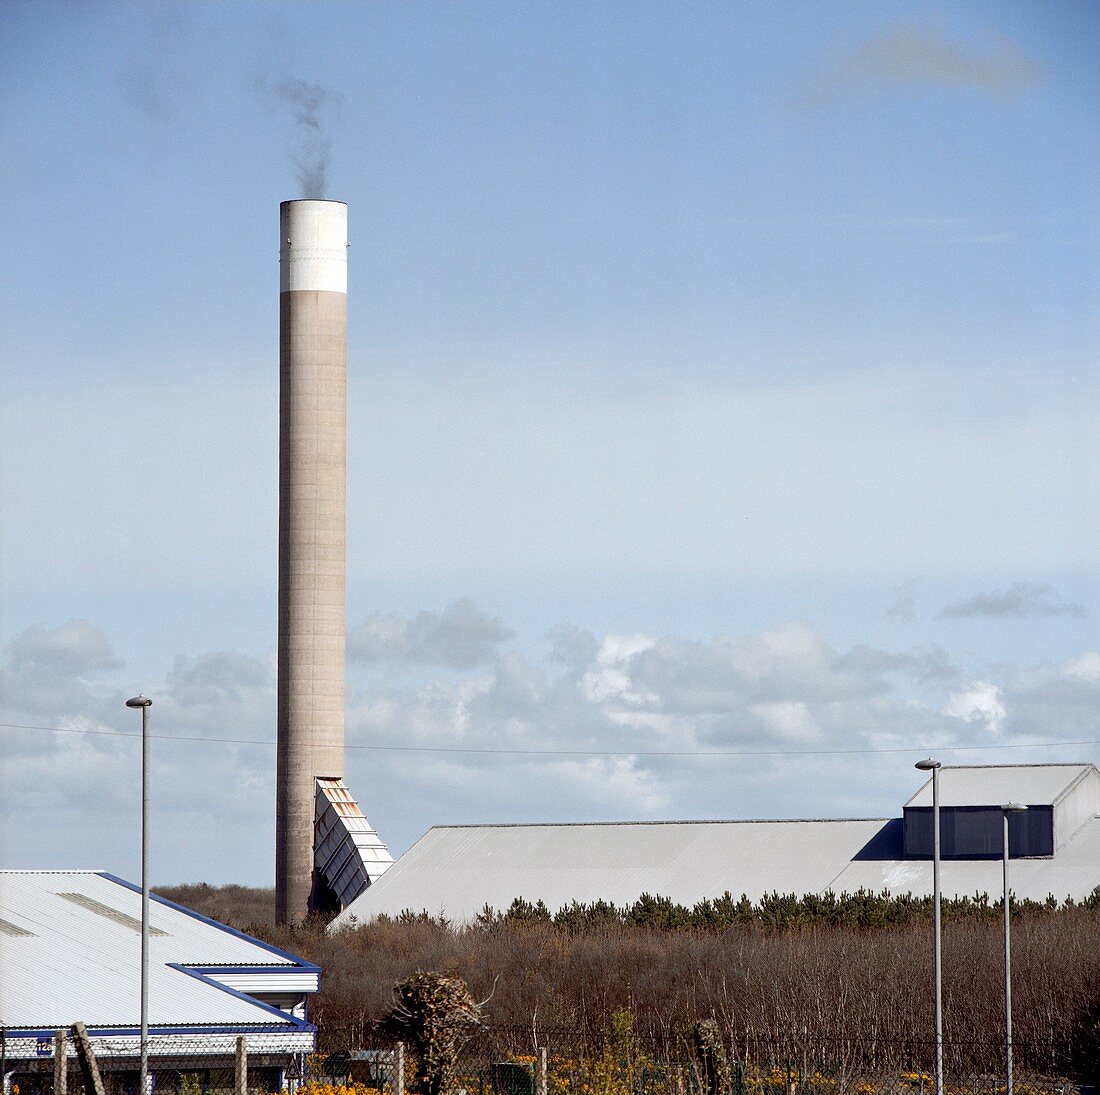 Aluminium smelter chimney